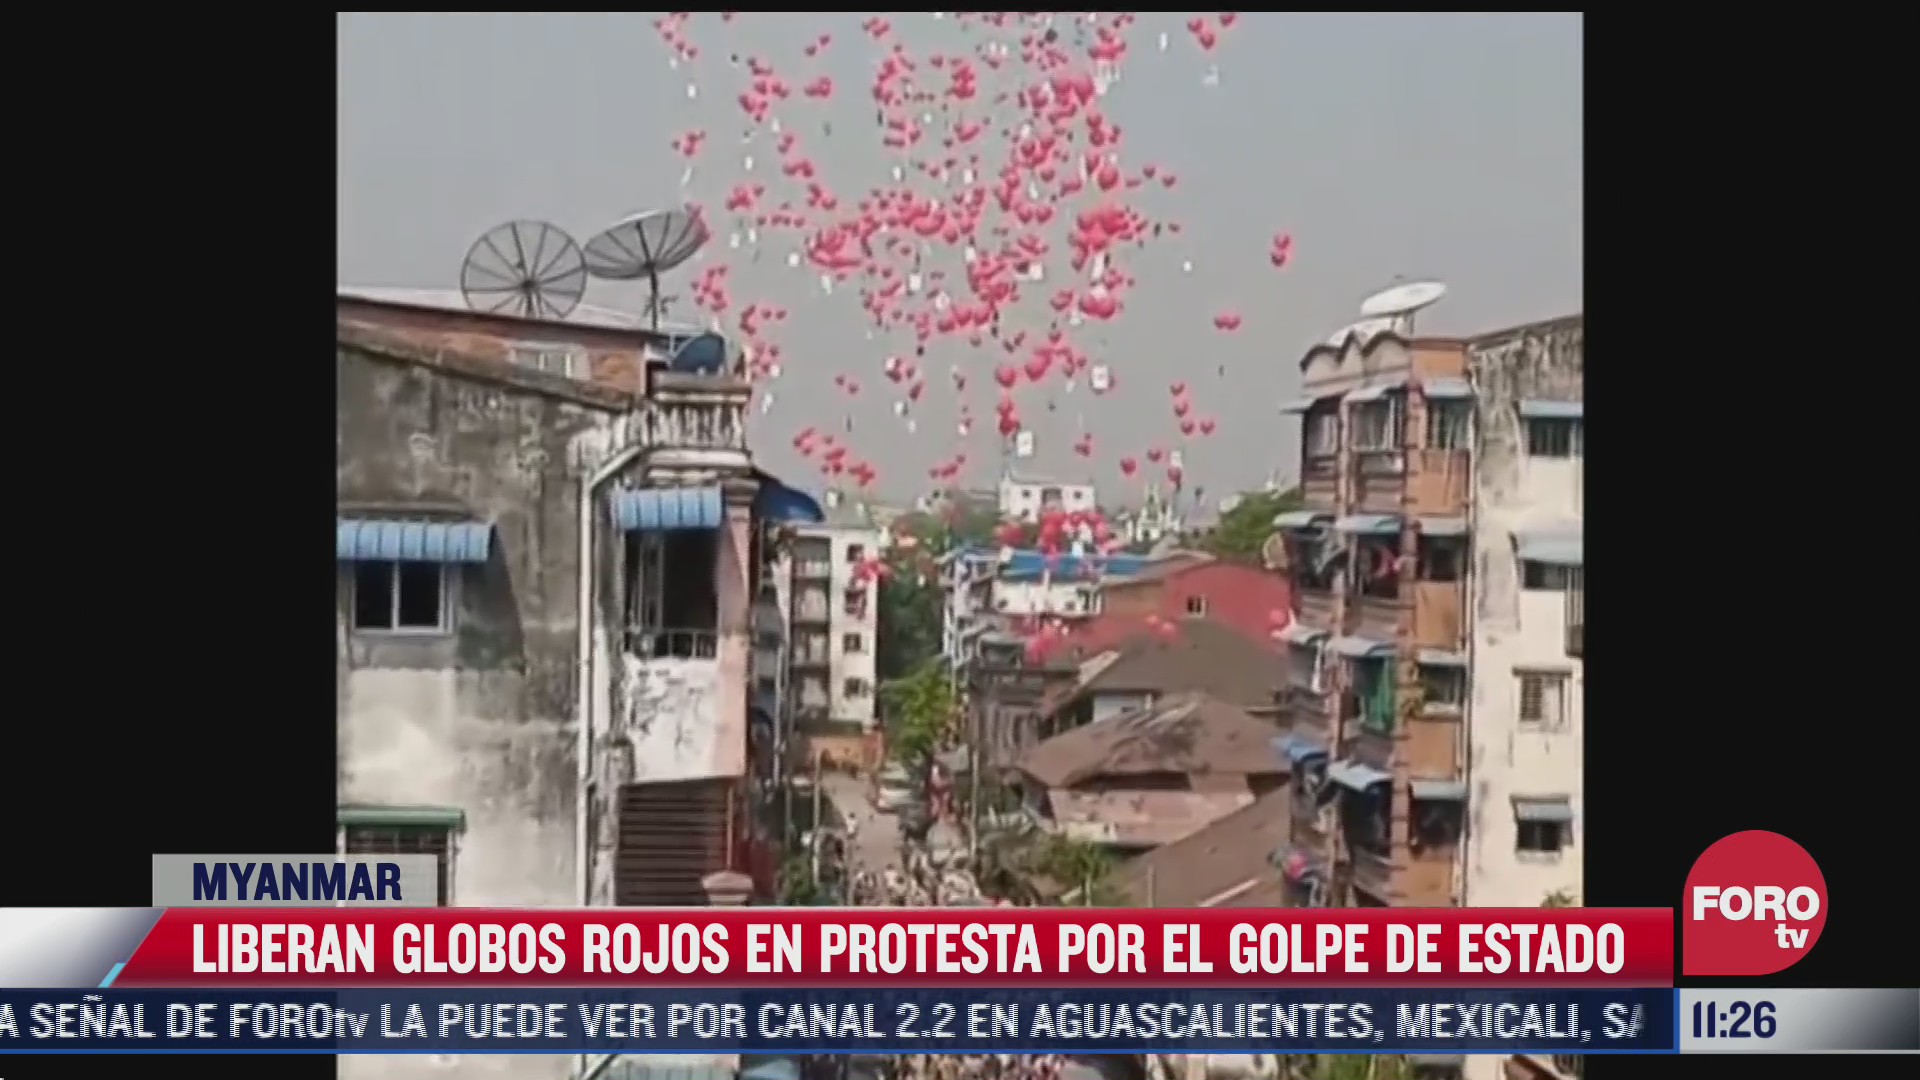 liberan globos rojos en protesta por el golpe de estado en myanmar